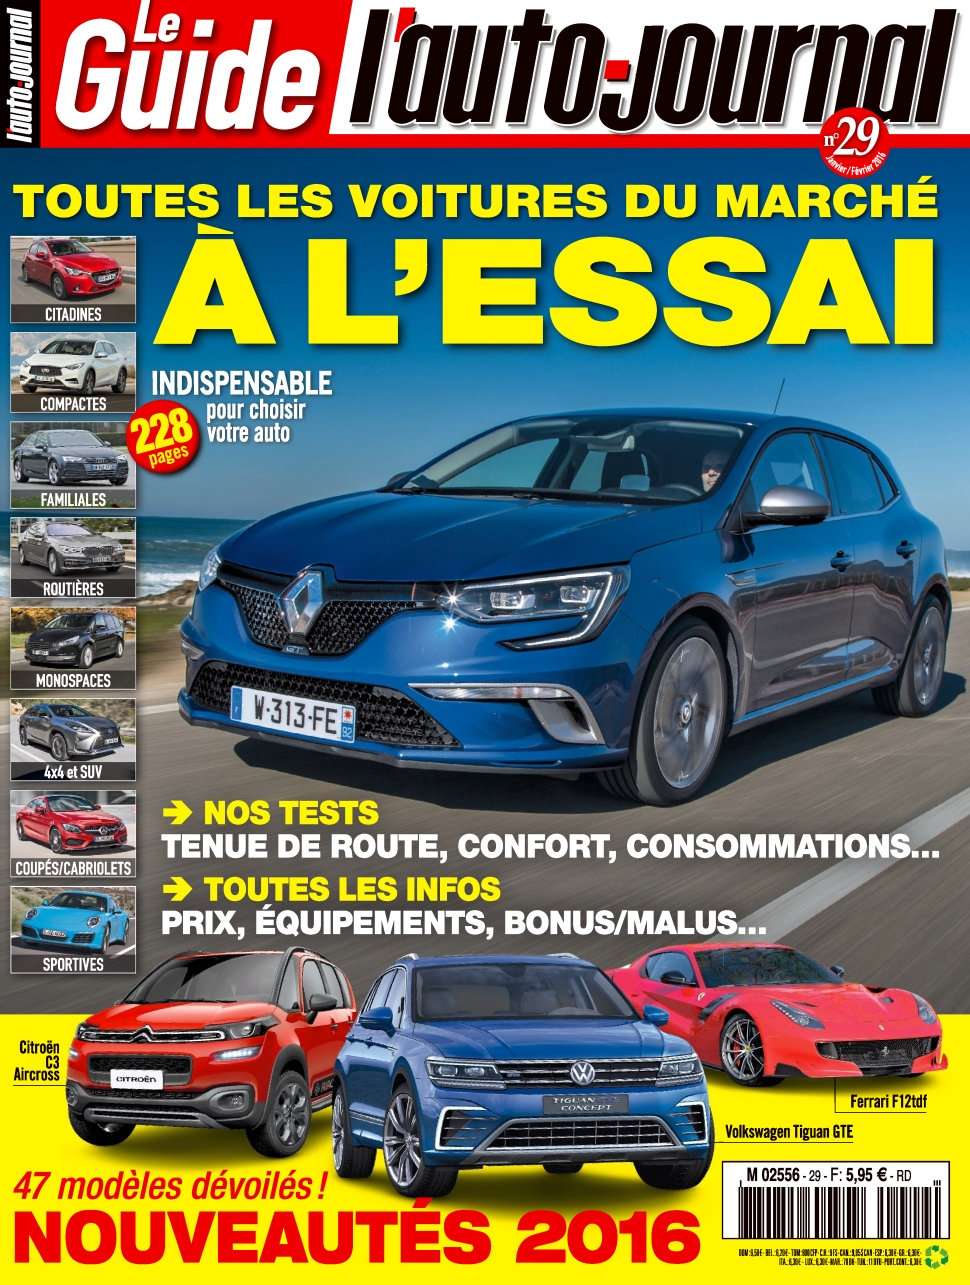 L'Auto-Journal (Le Guide) N°29 - Janvier/Février 2016